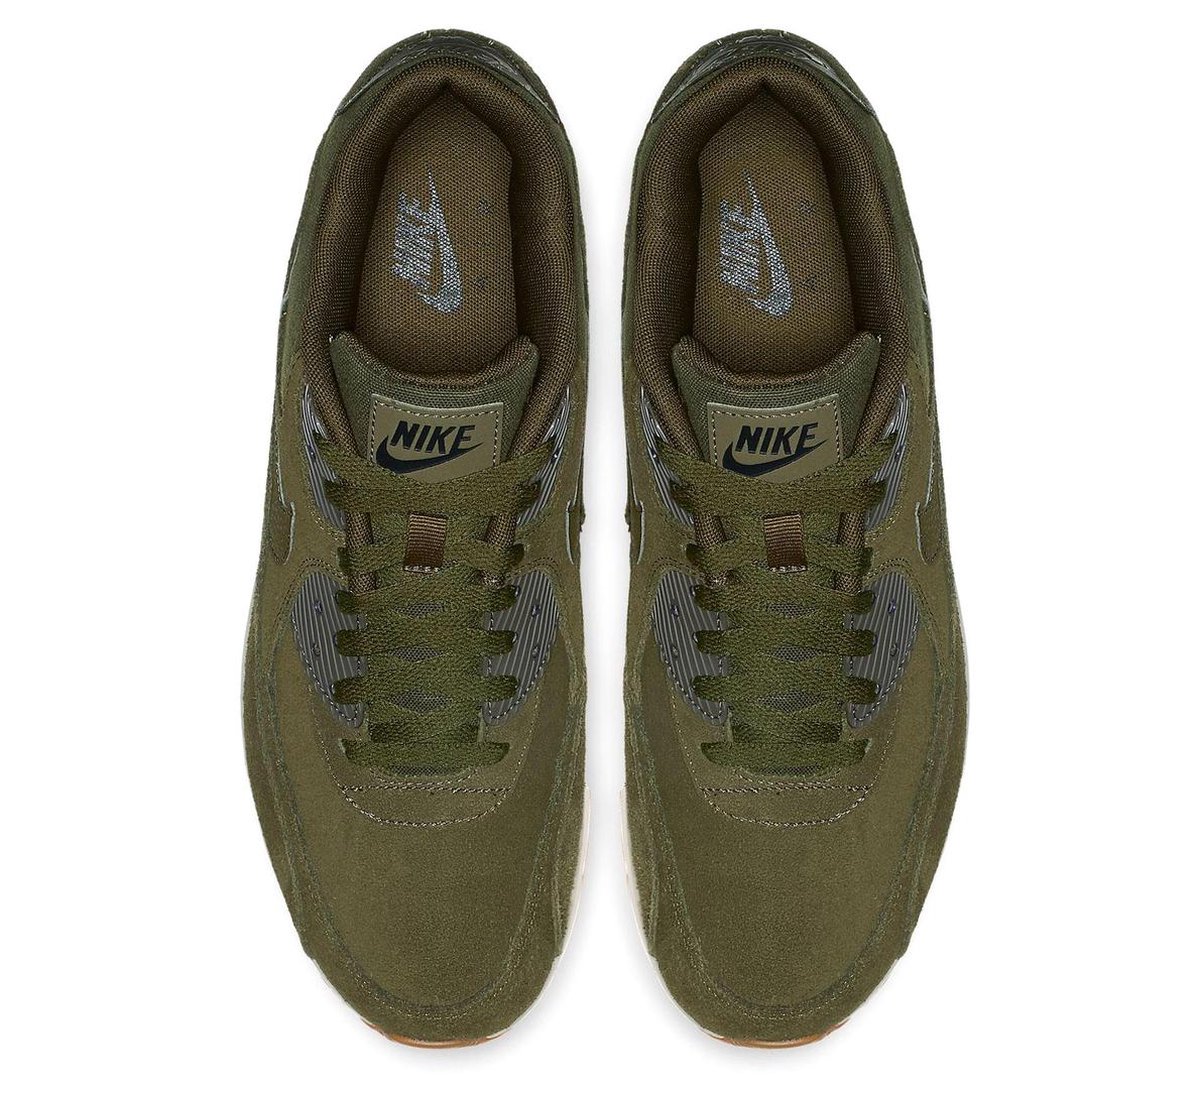 Is aan het huilen Beneden afronden Dominant Nike Sneakers - Maat 45 - Mannen - olijfgroen | bol.com